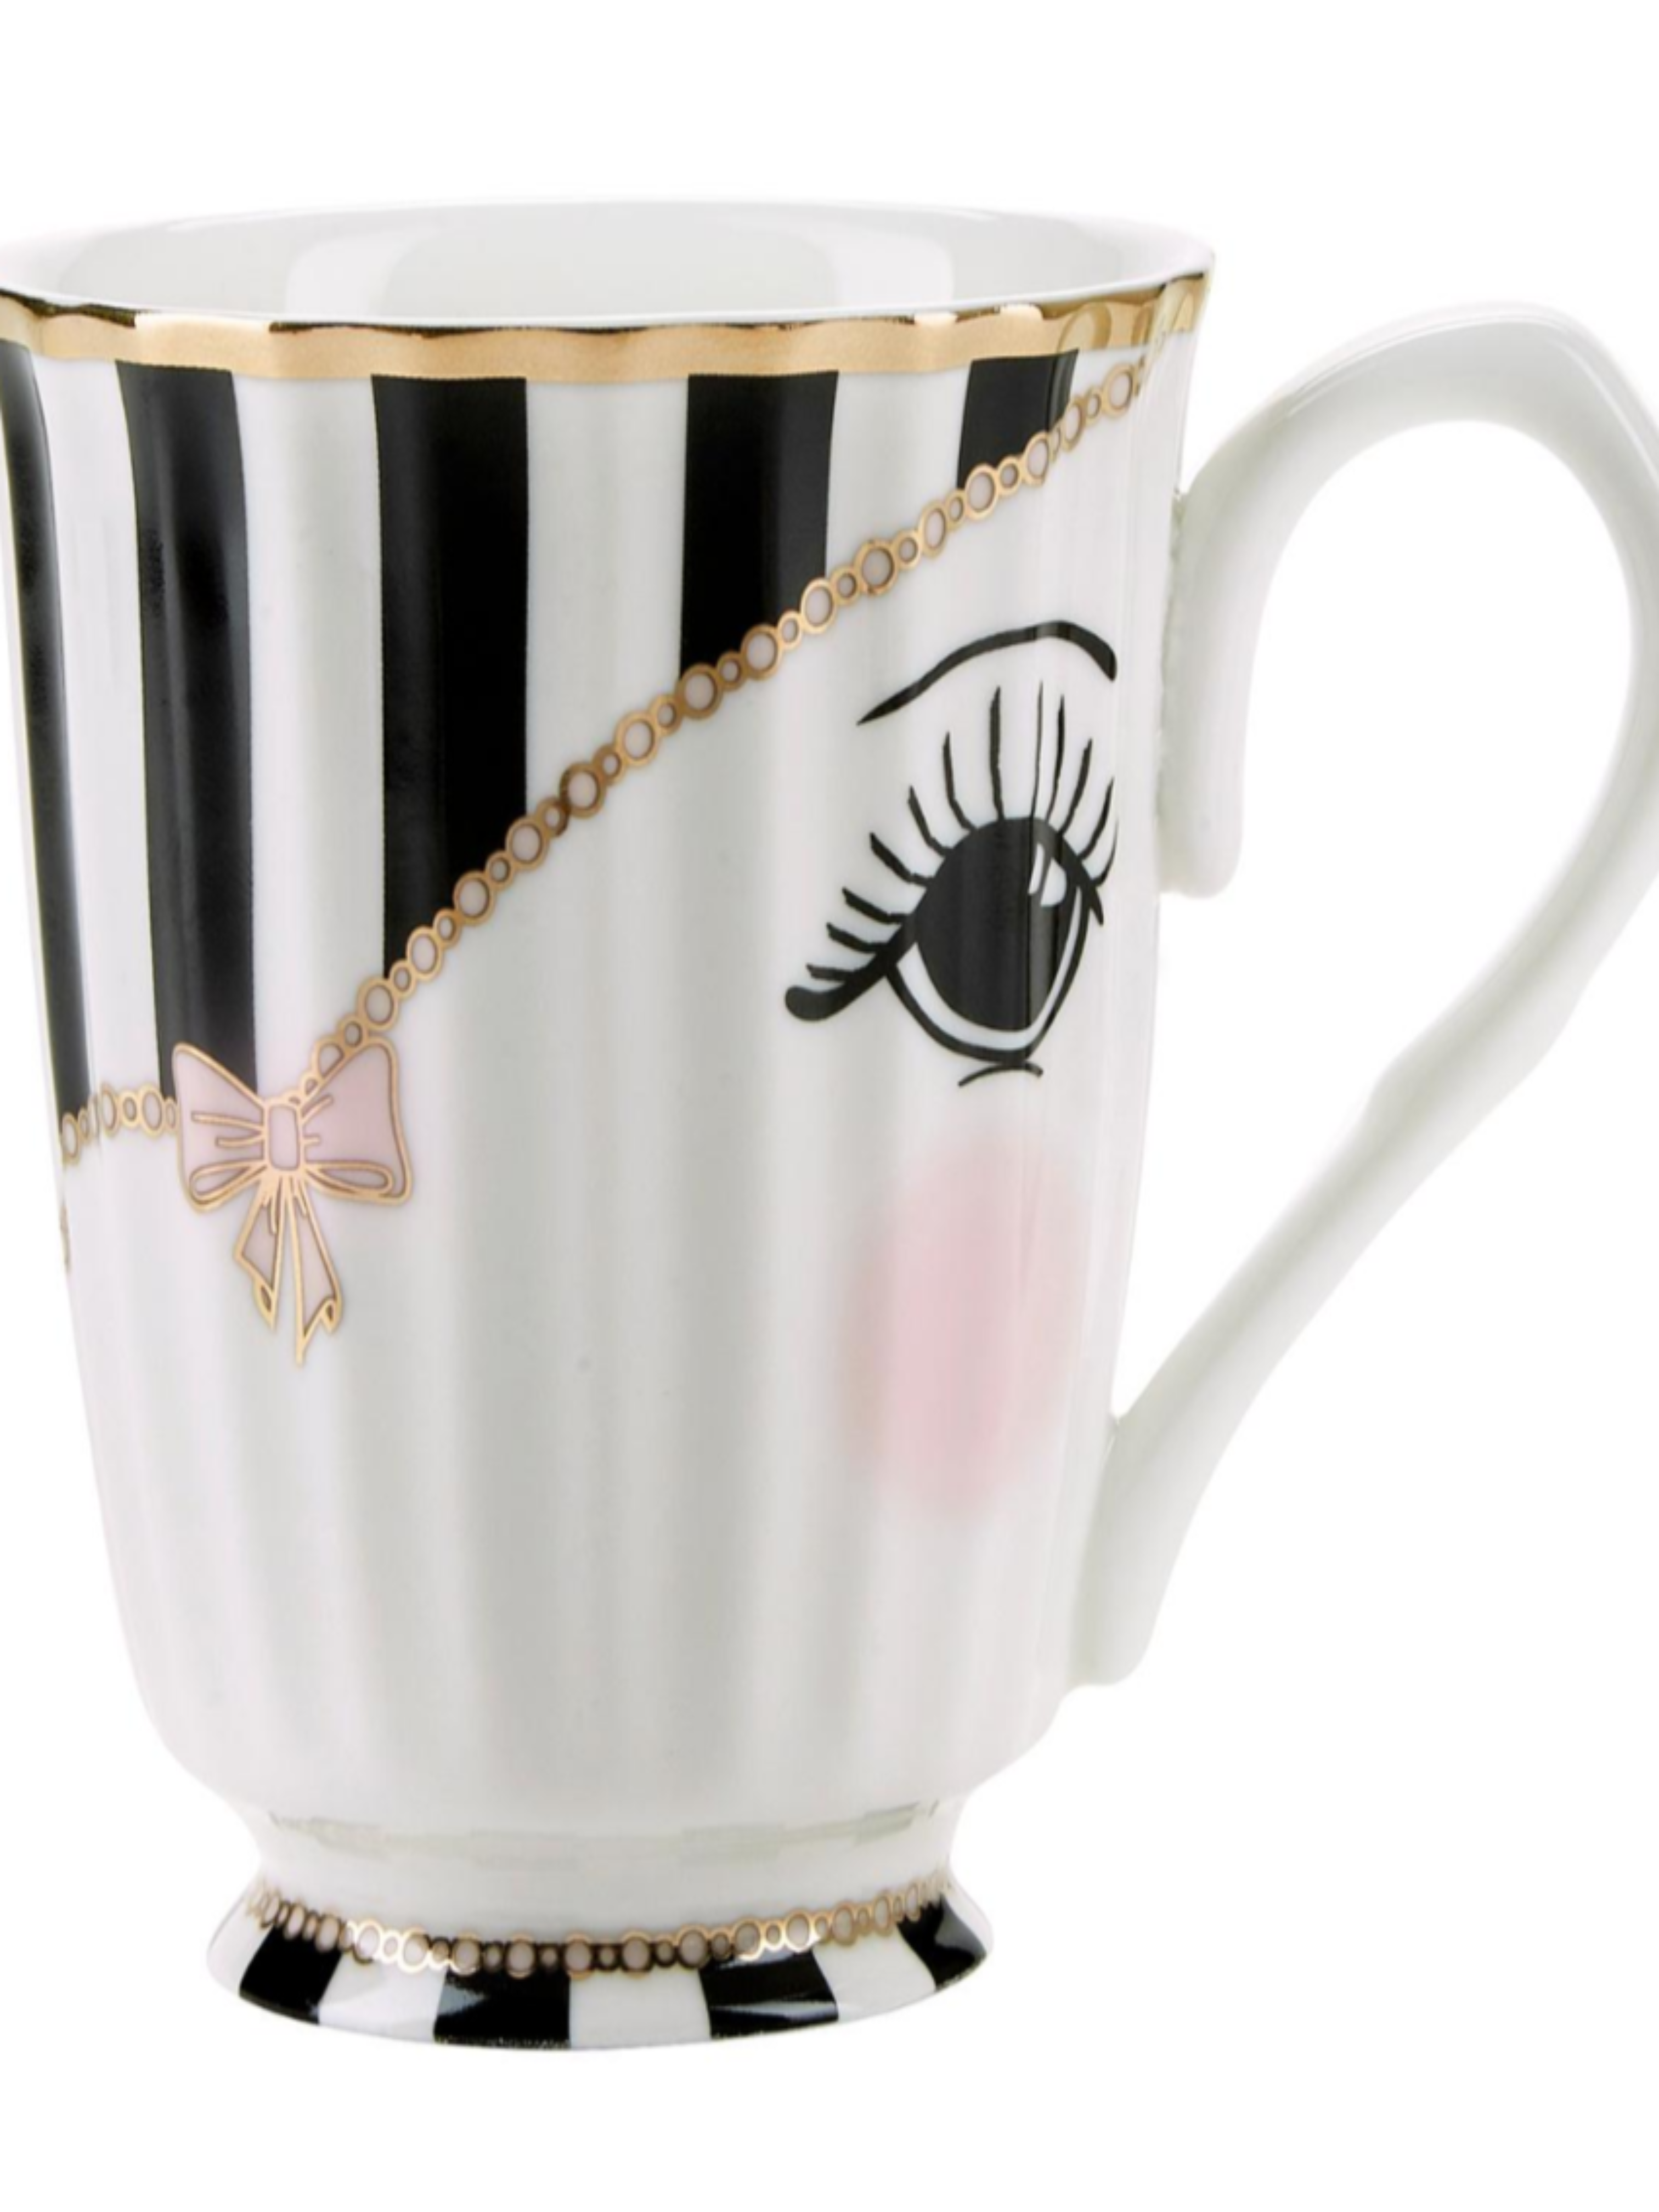 Miss Etoile Bow Design China Mug